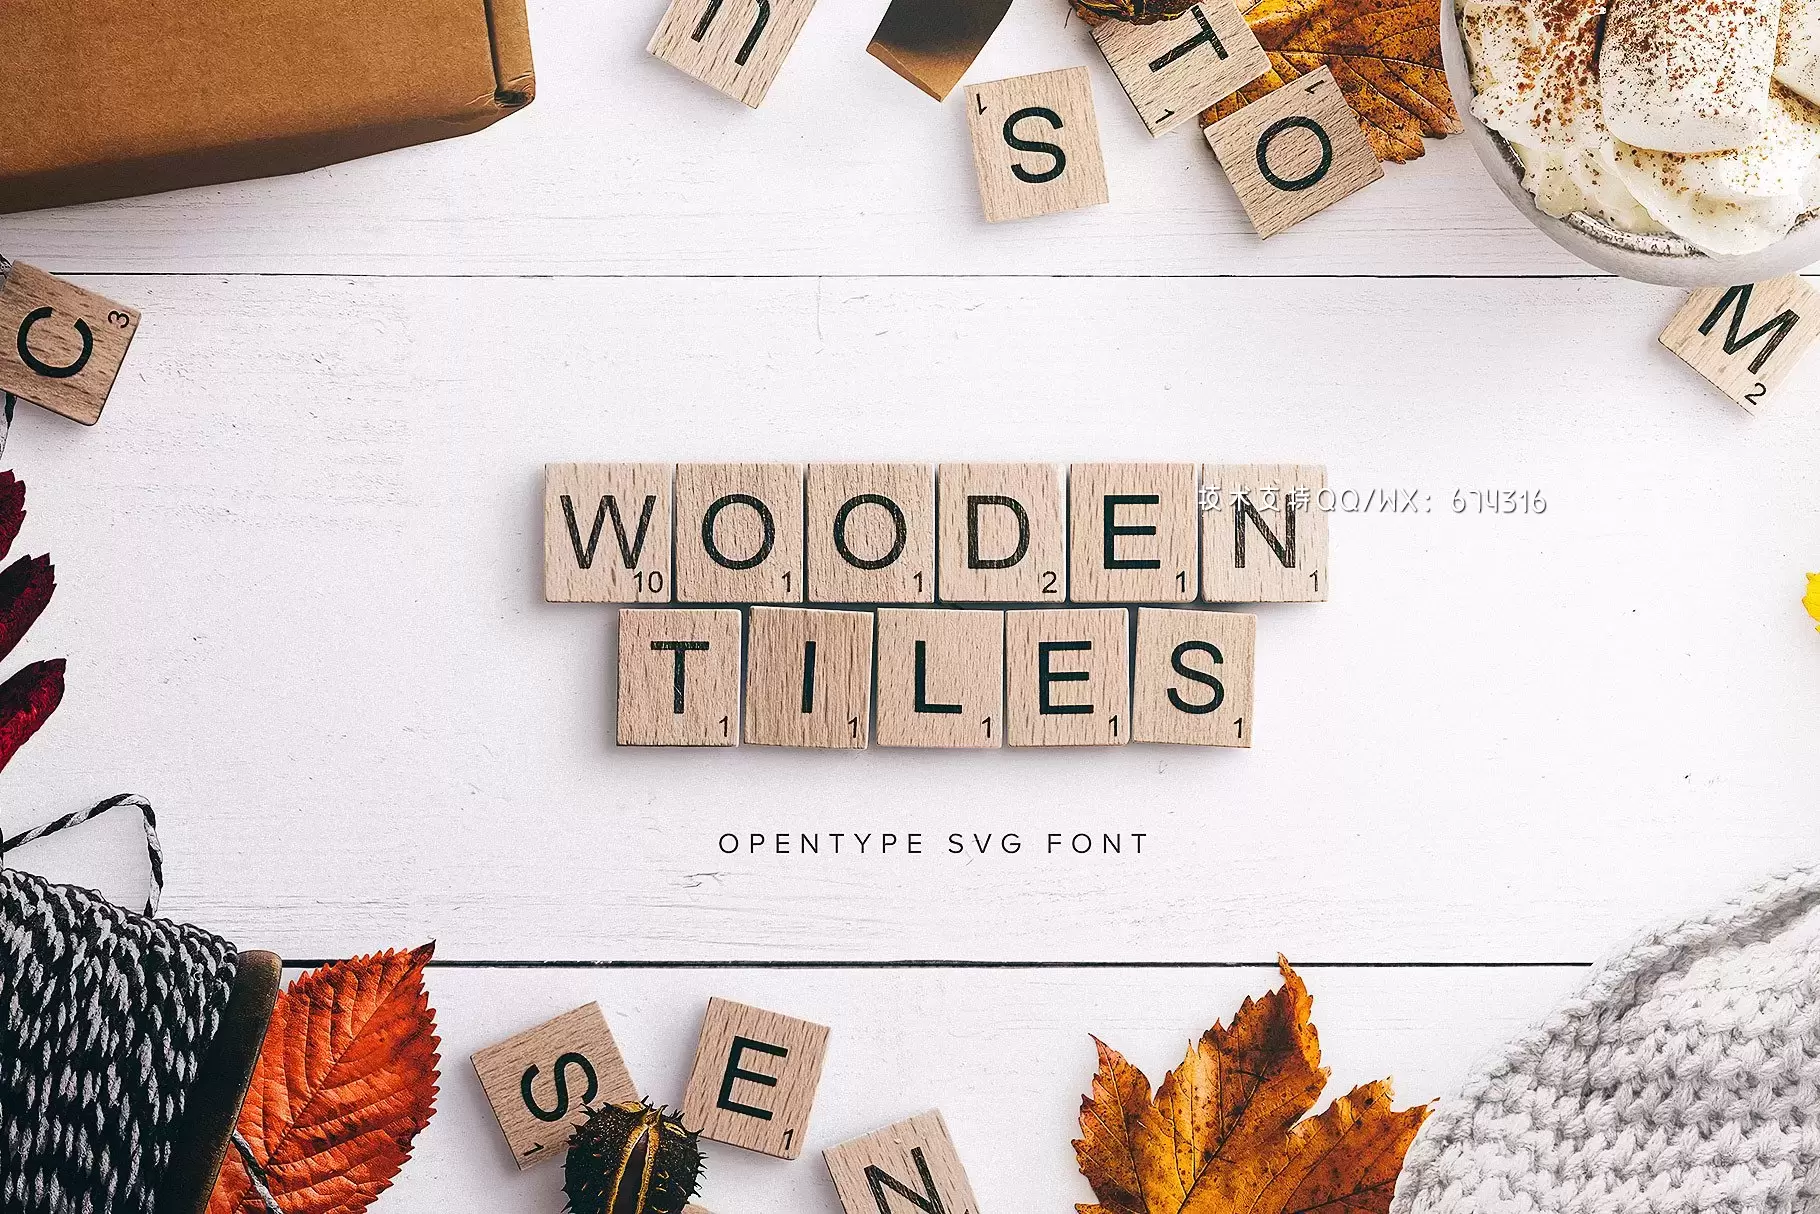 木纹字体 Wooden Tiles Font插图